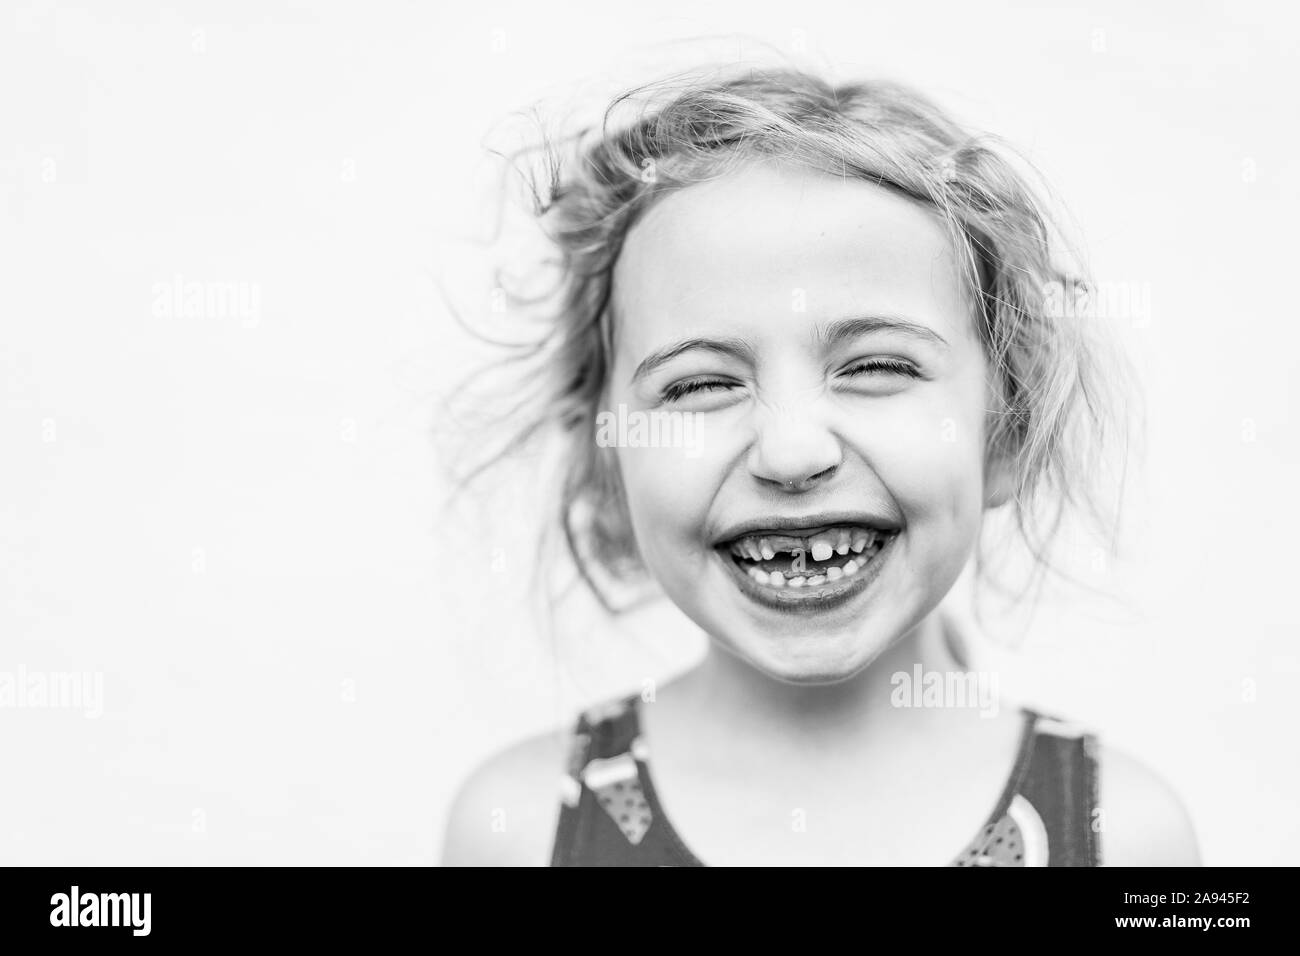 Un portrait d'une petite fille ne retrouve plus ses dent de devant. Banque D'Images